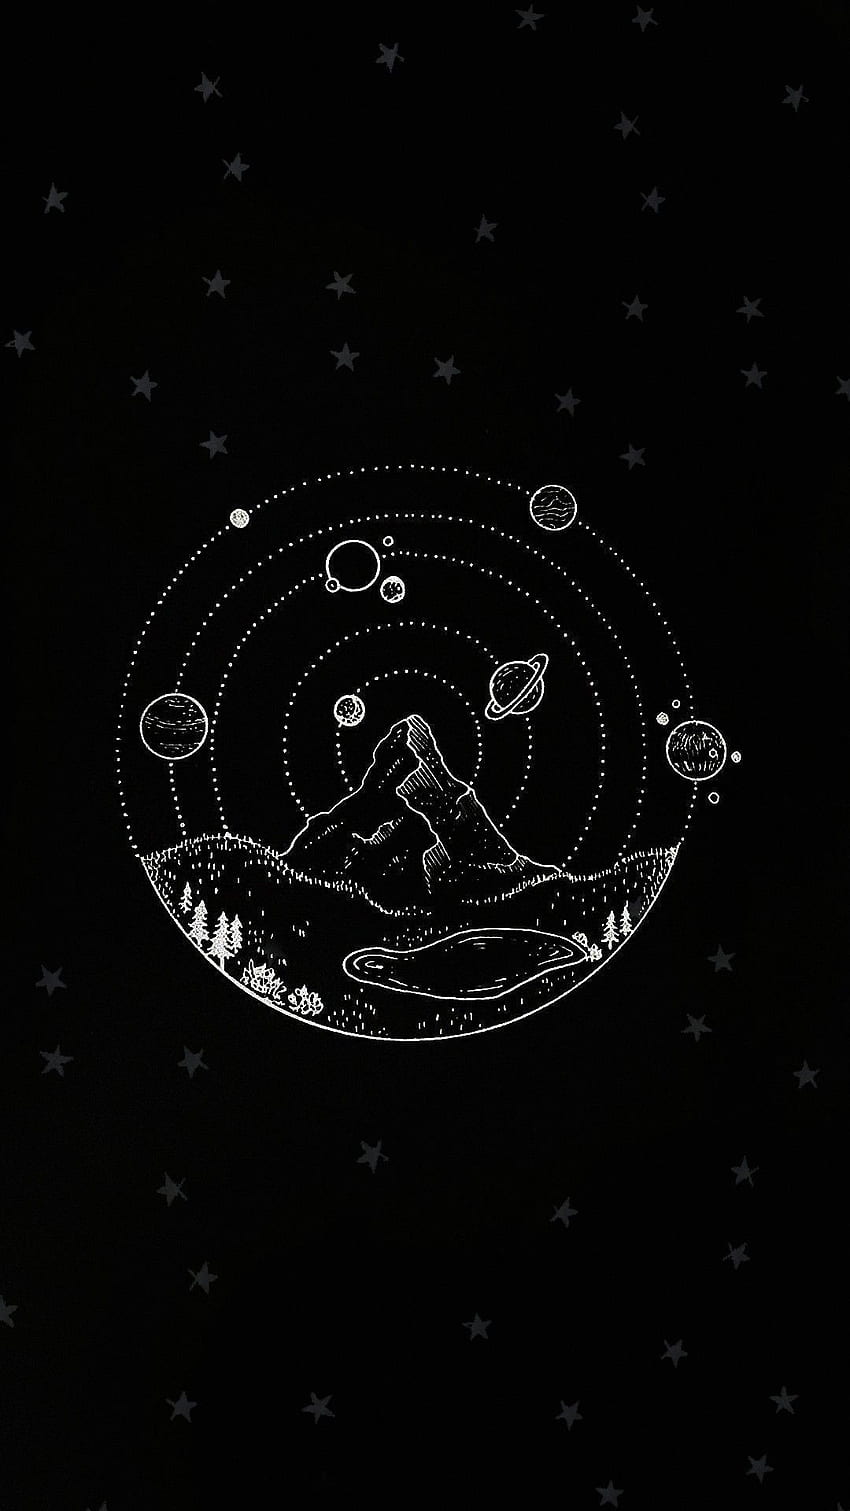 Ilustración, Fuente, Círculo, Blanco y negro, Objeto astronómico Iphone W. Estrellas de iPhone, Iphone en blanco y negro, Ilustración de iPhone fondo de pantalla del teléfono